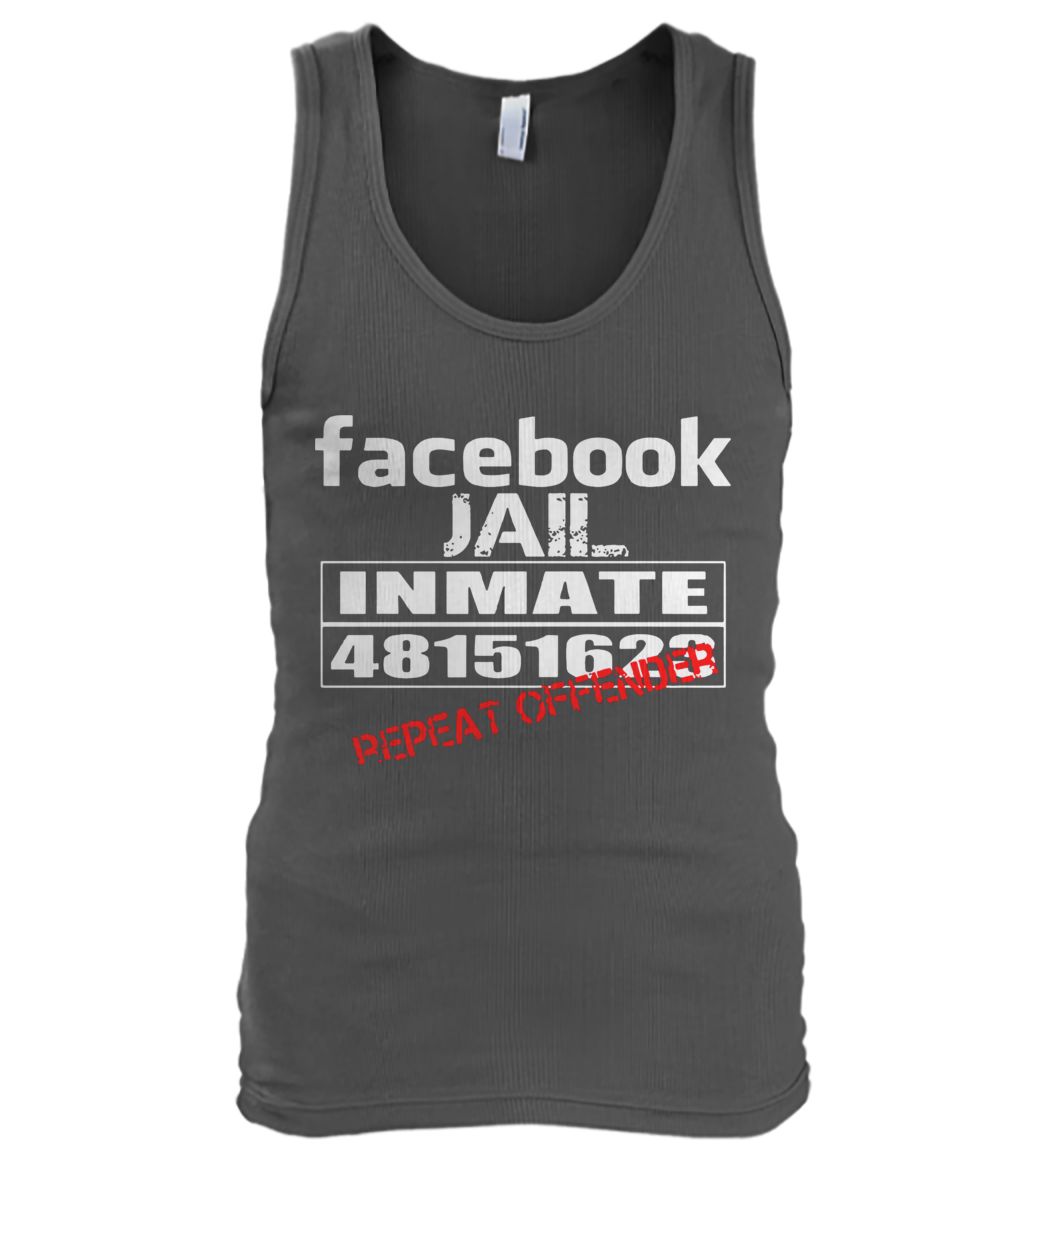 Facebook jail inmate 48151623 repeat offender men's tank top